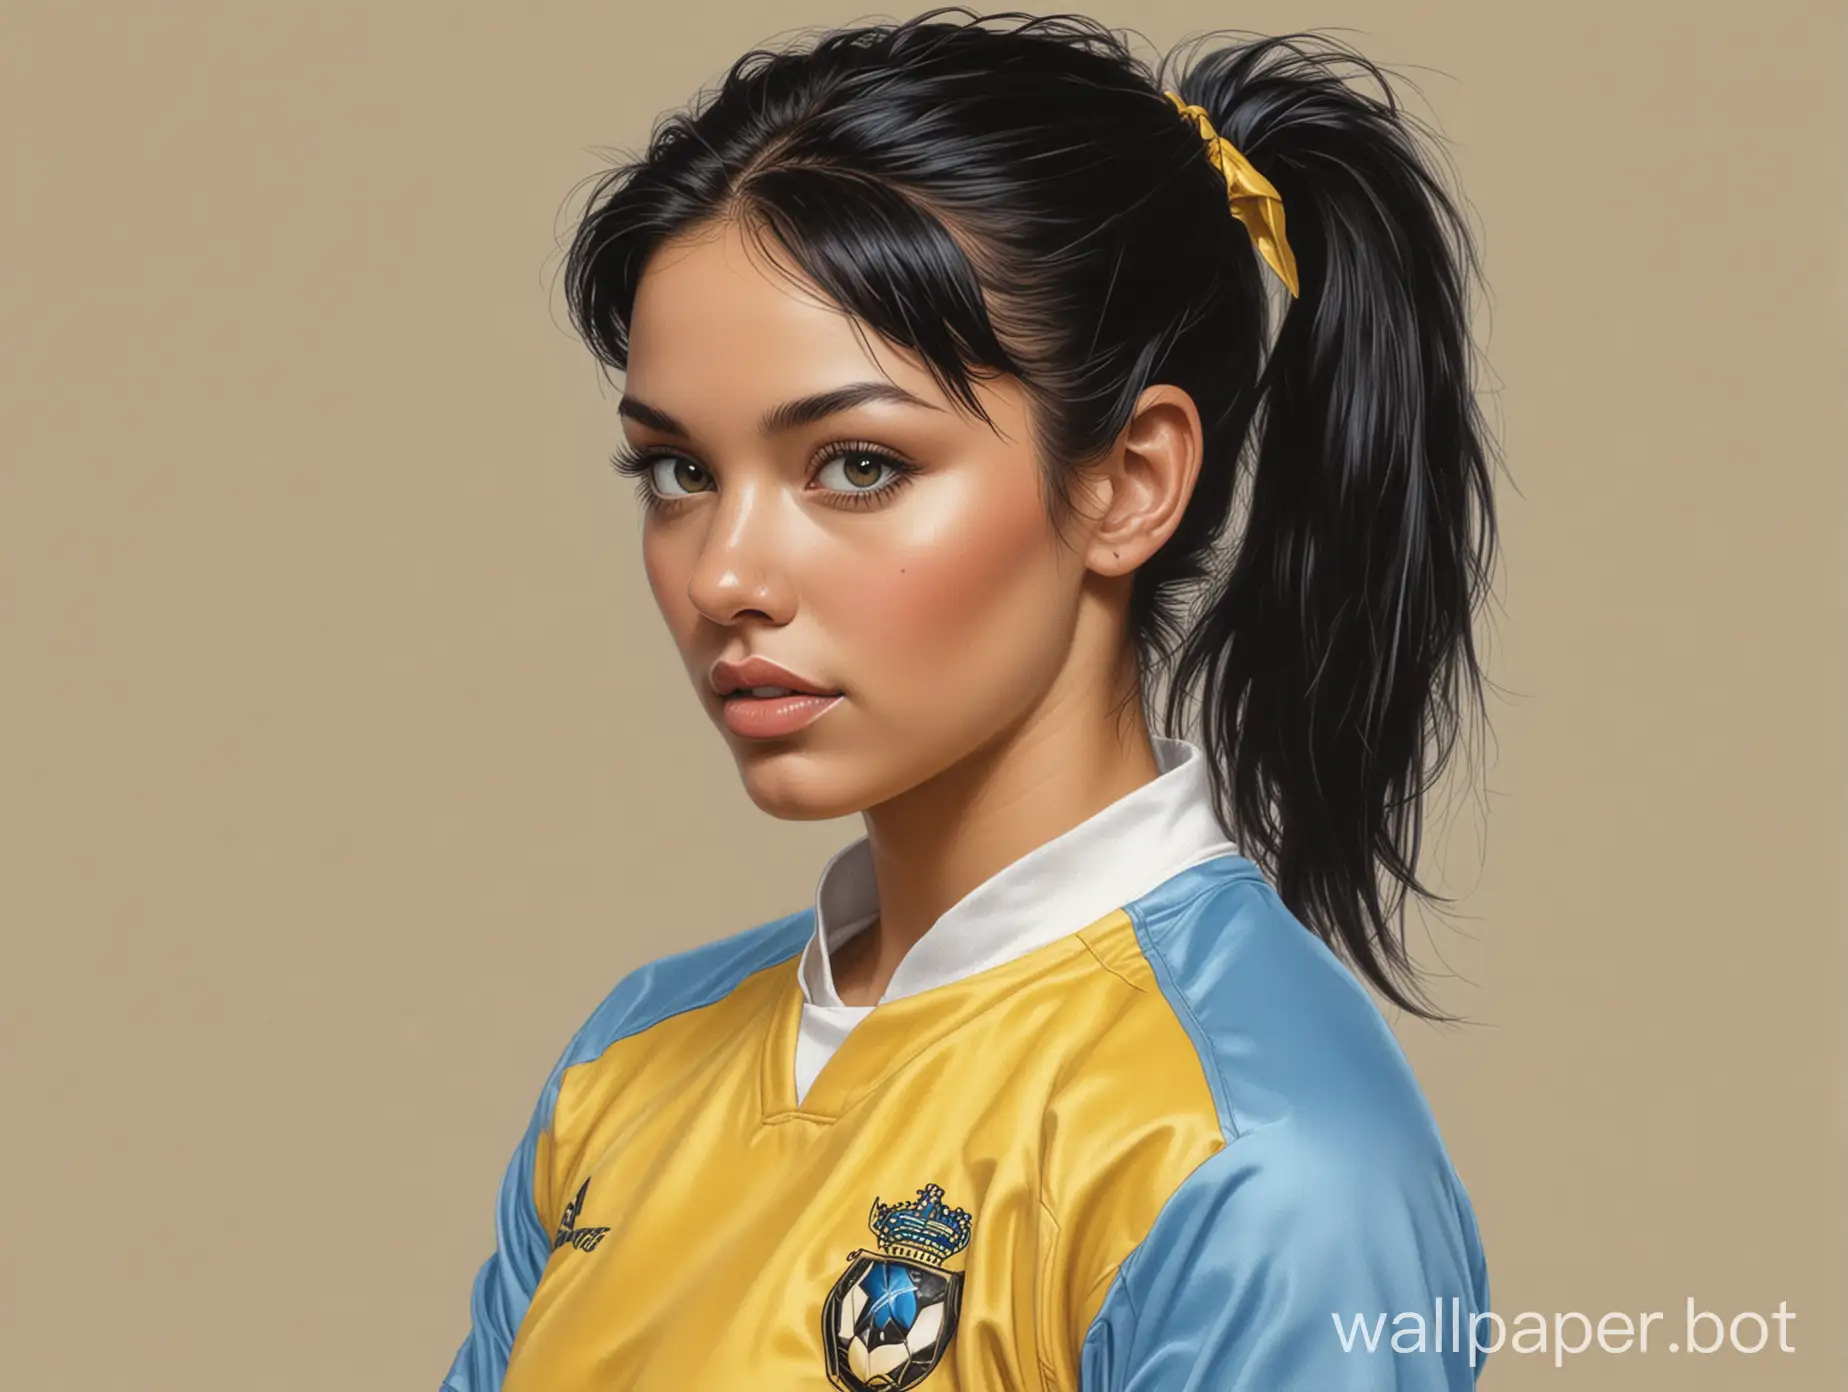 Portrait-Sketch-of-Sydney-Crawford-in-Soccer-Uniform